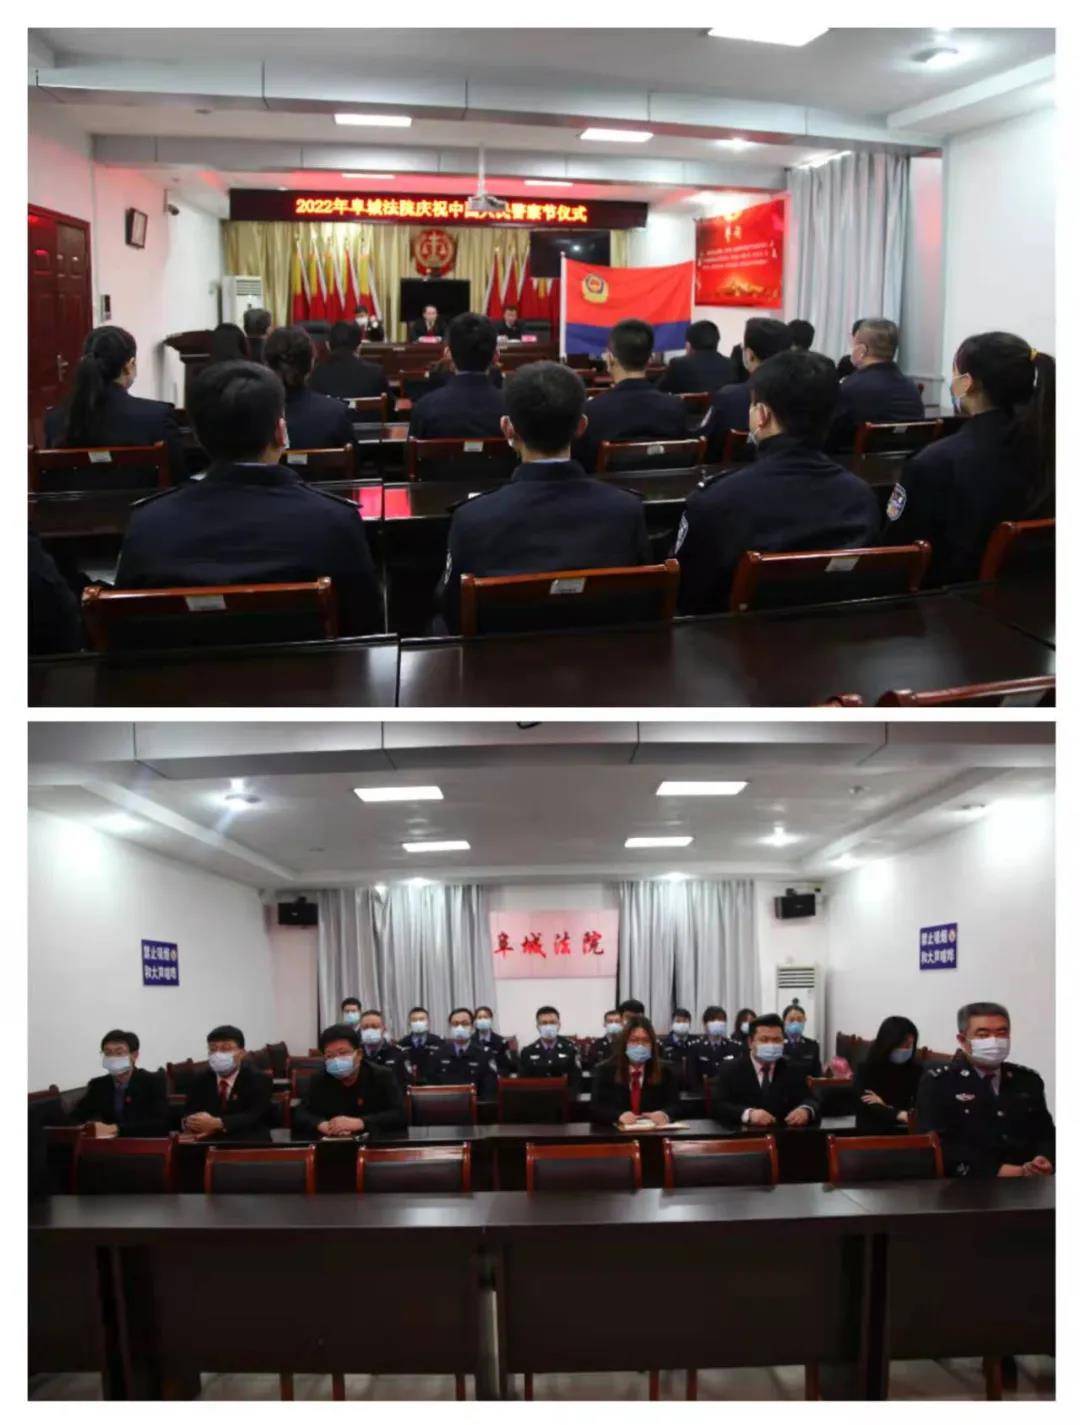 衡水市阜城法院开展庆祝中国人民警察节活动